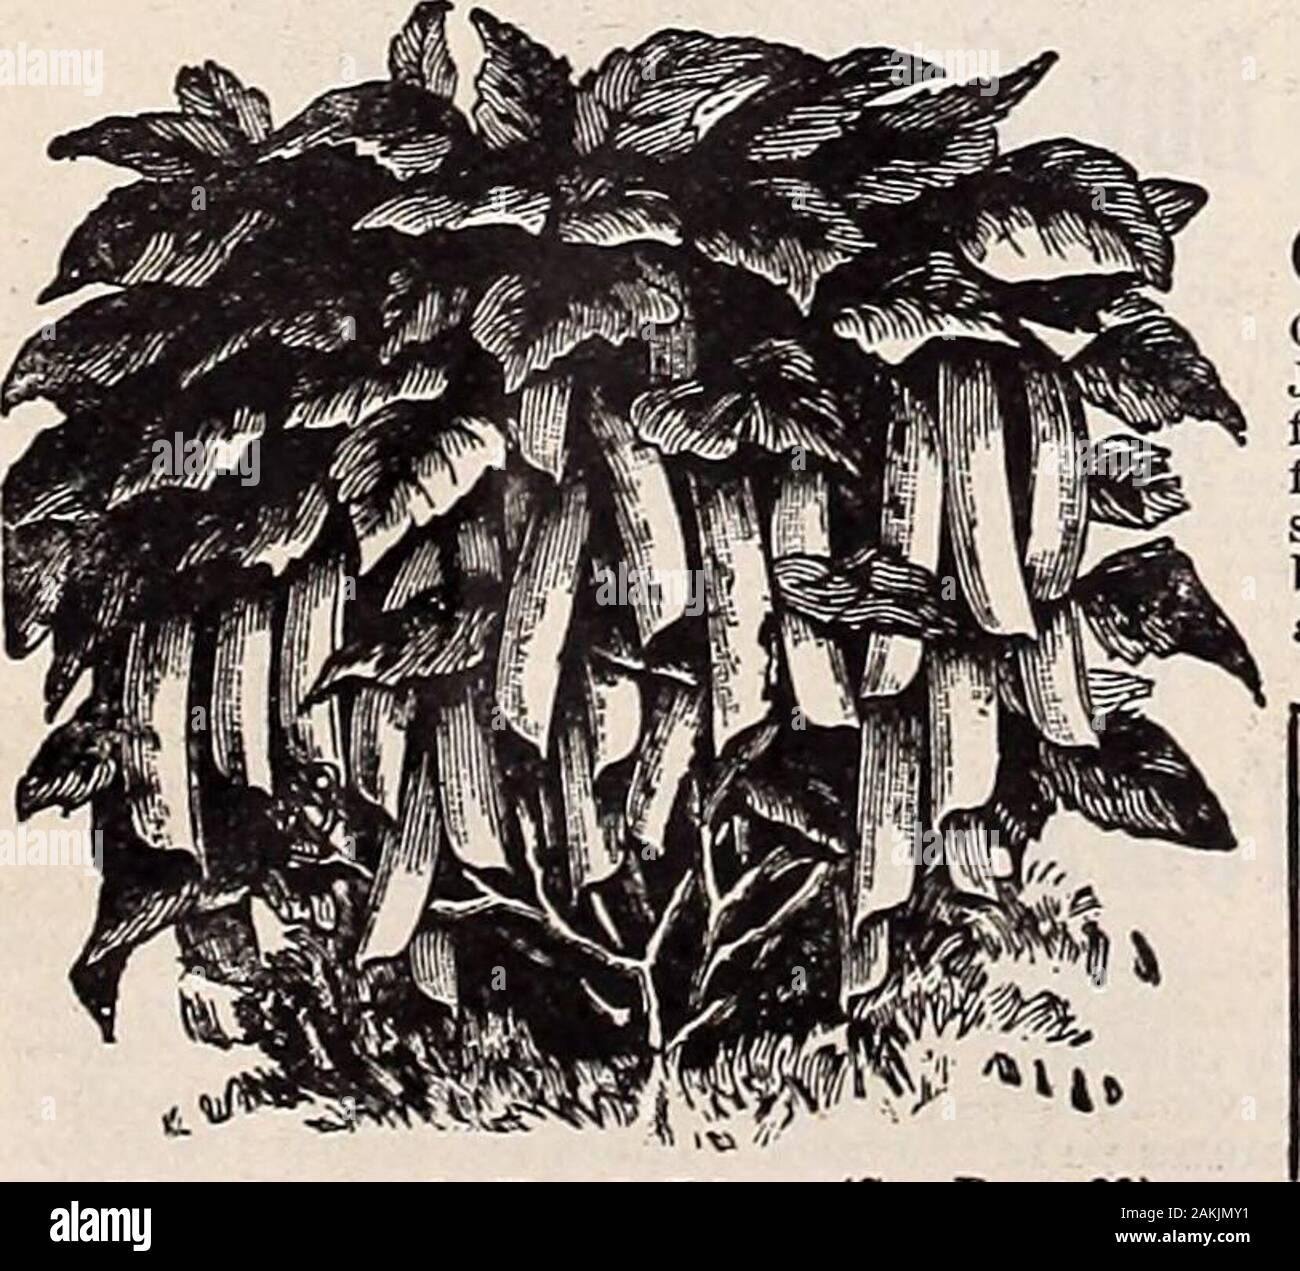 Hastings' seeds : printemps 1912 catalogue . Palmetto asperges. Pour les semis de printemps Banque D'Images